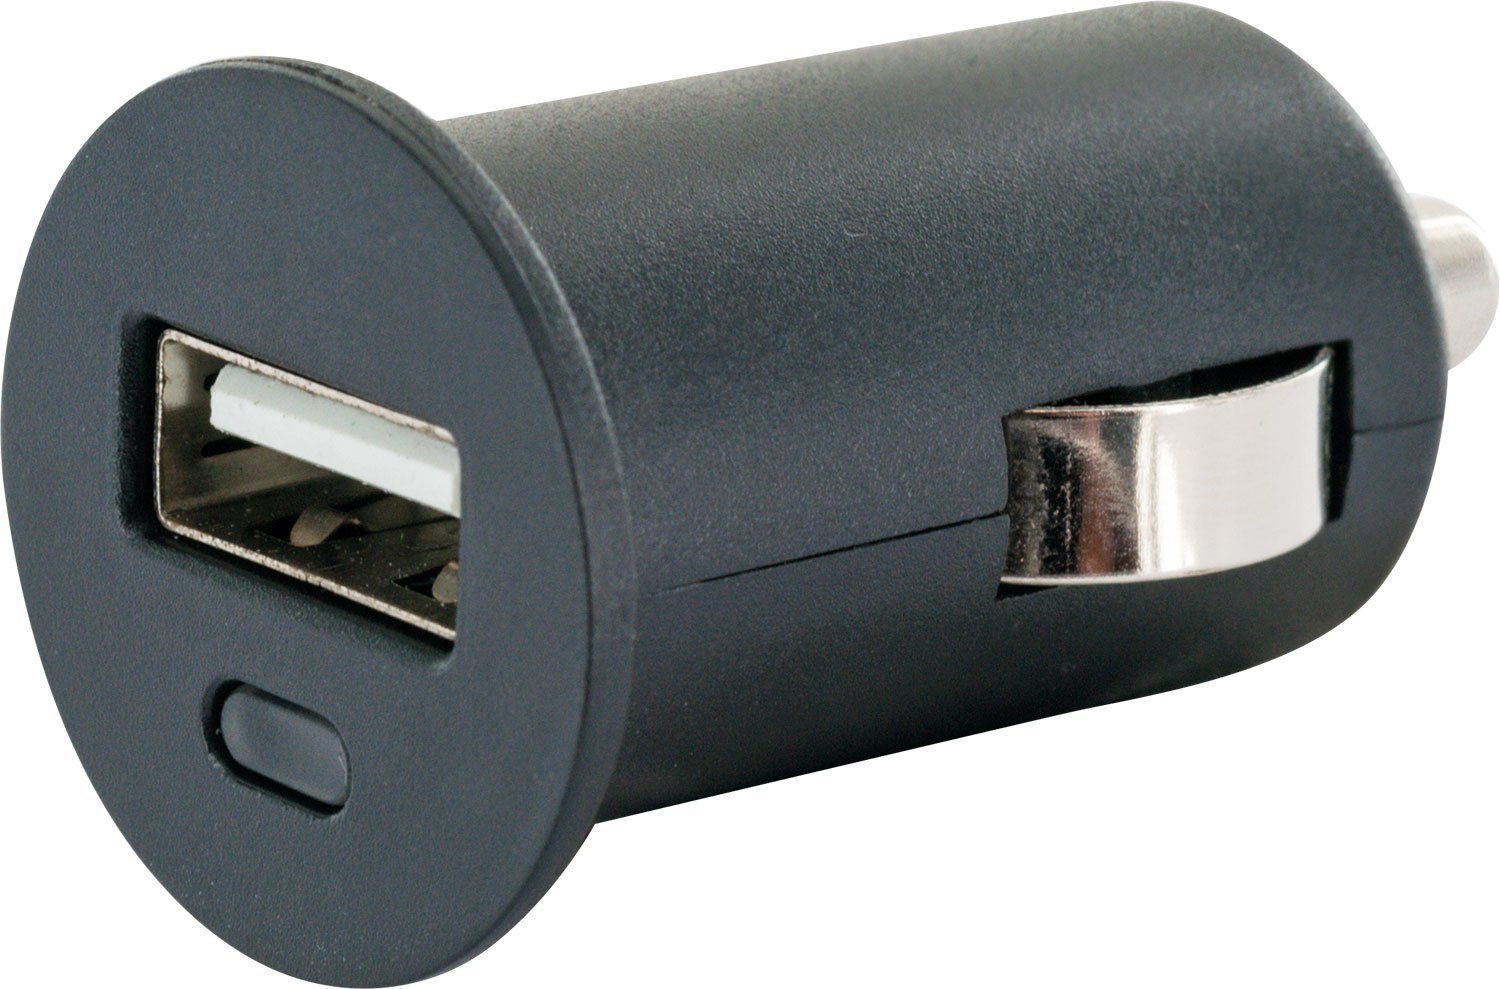 zu Zigarettenanzünder KFZ-Adapter A Schwaiger Sicherheitssystem 531 Buchse, 2.0 LAD12 integriertes USB Multi-Schutz